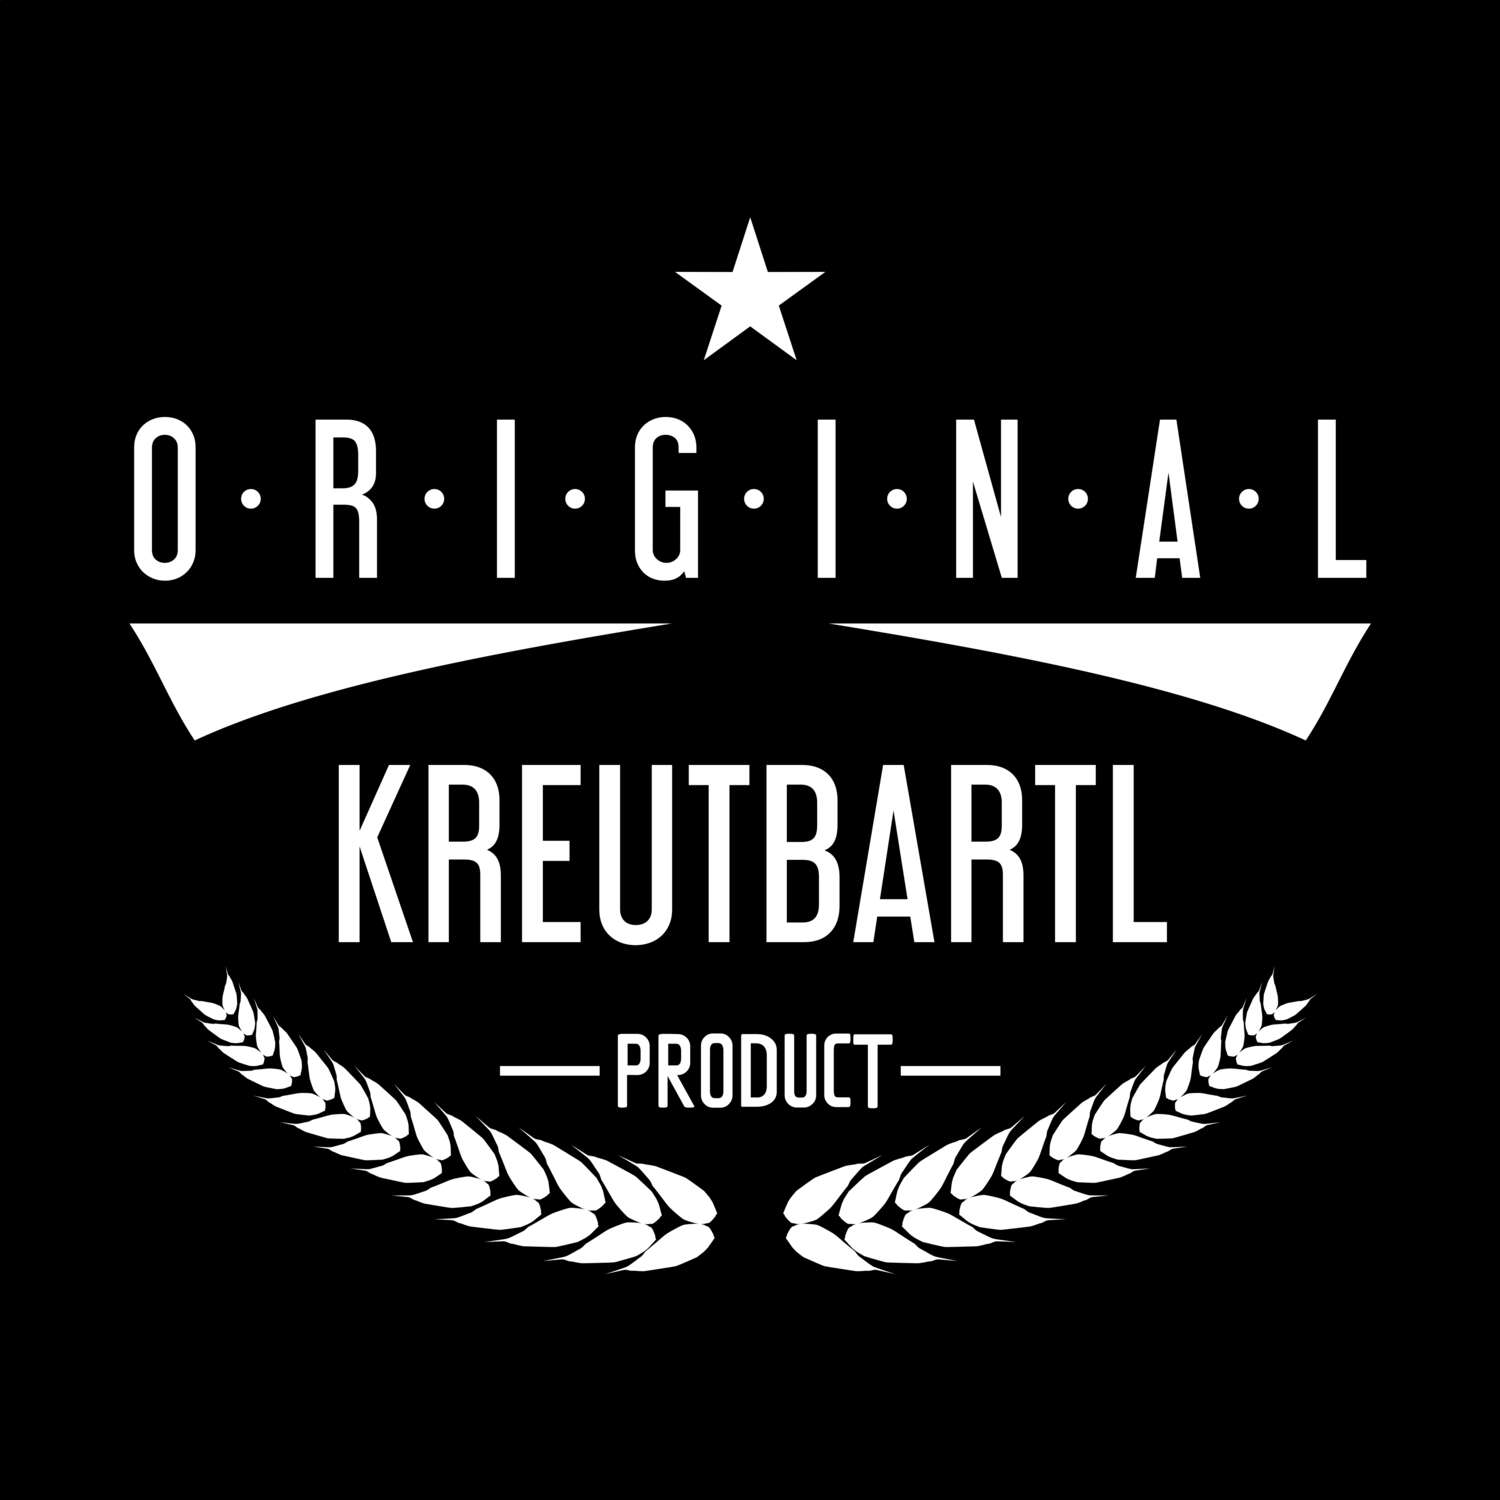 Kreutbartl T-Shirt »Original Product«